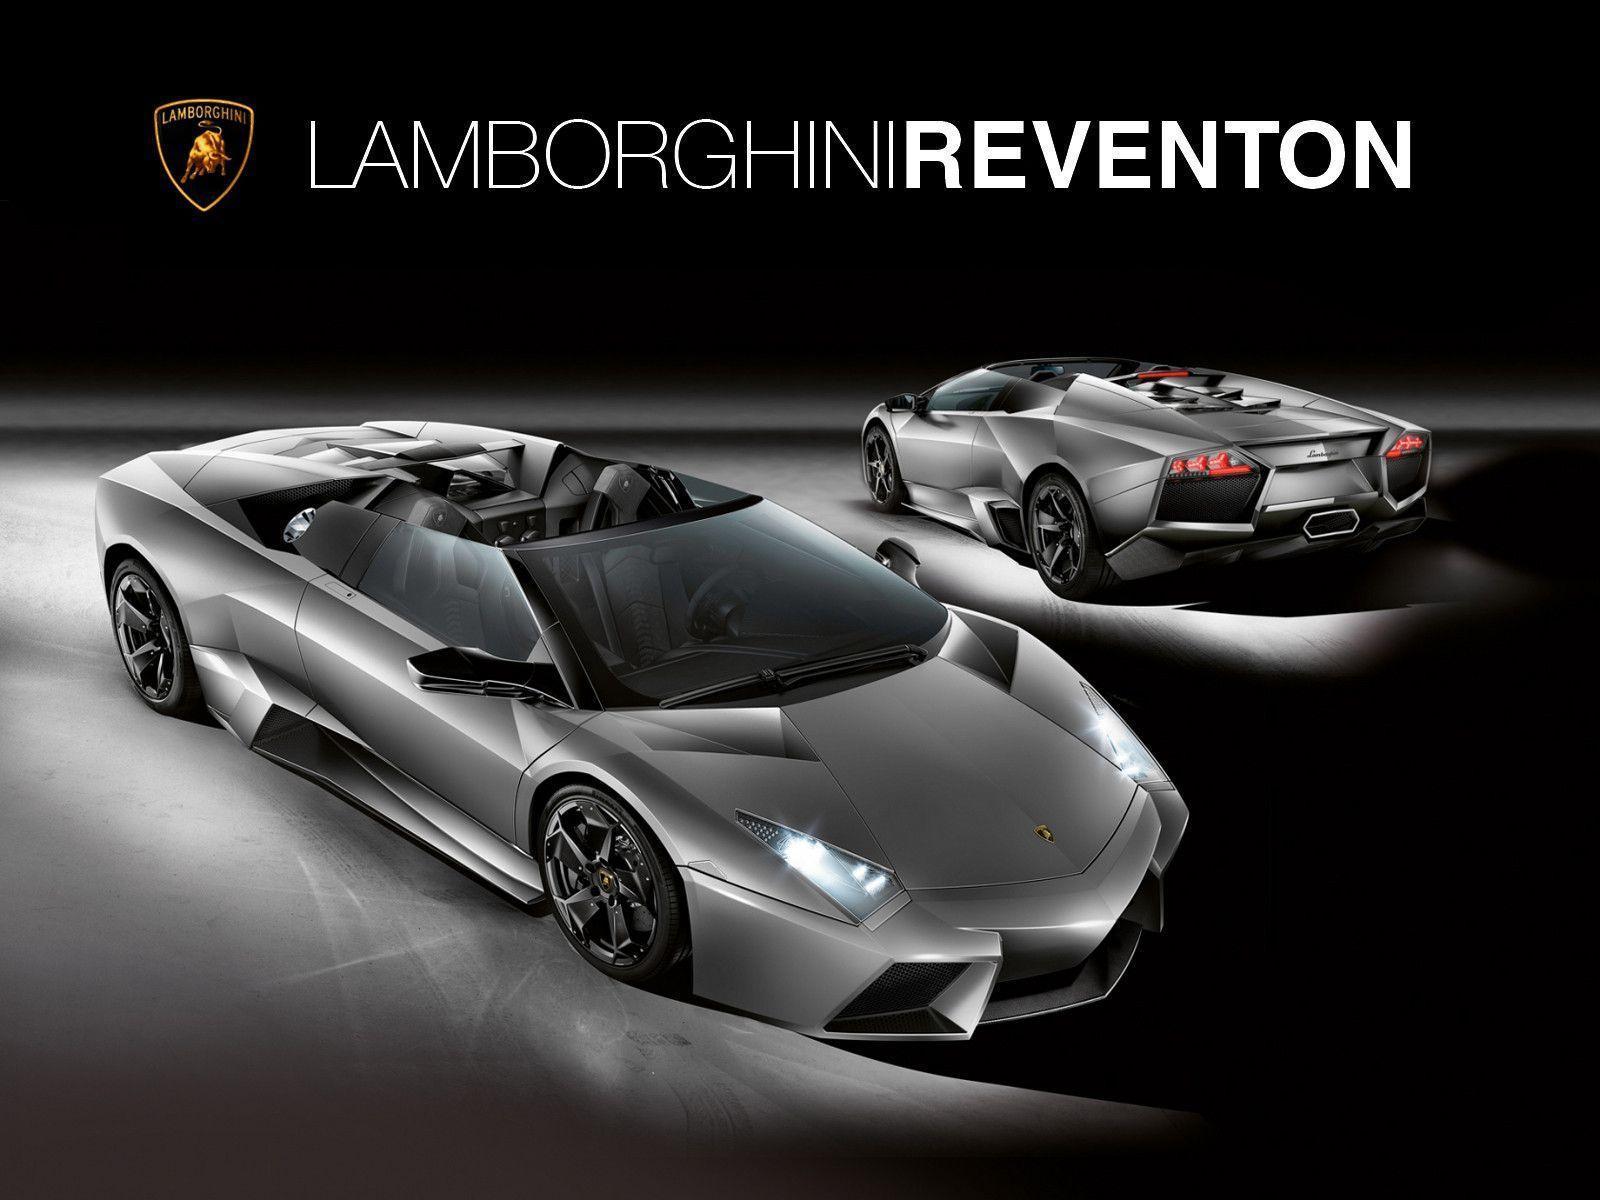 Nếu bạn muốn tìm kiếm hình nền Lamborghini đỉnh cao, hãy nhấn vào nút xem ngay và khám phá bộ sưu tập hình nền Lamborghini Reventon đầy nghệ thuật. Với những hình ảnh sắc nét và tinh tế, bạn sẽ không thể rời mắt khi thưởng thức những chiếc xe đẳng cấp bậc nhất của Lamborghini.